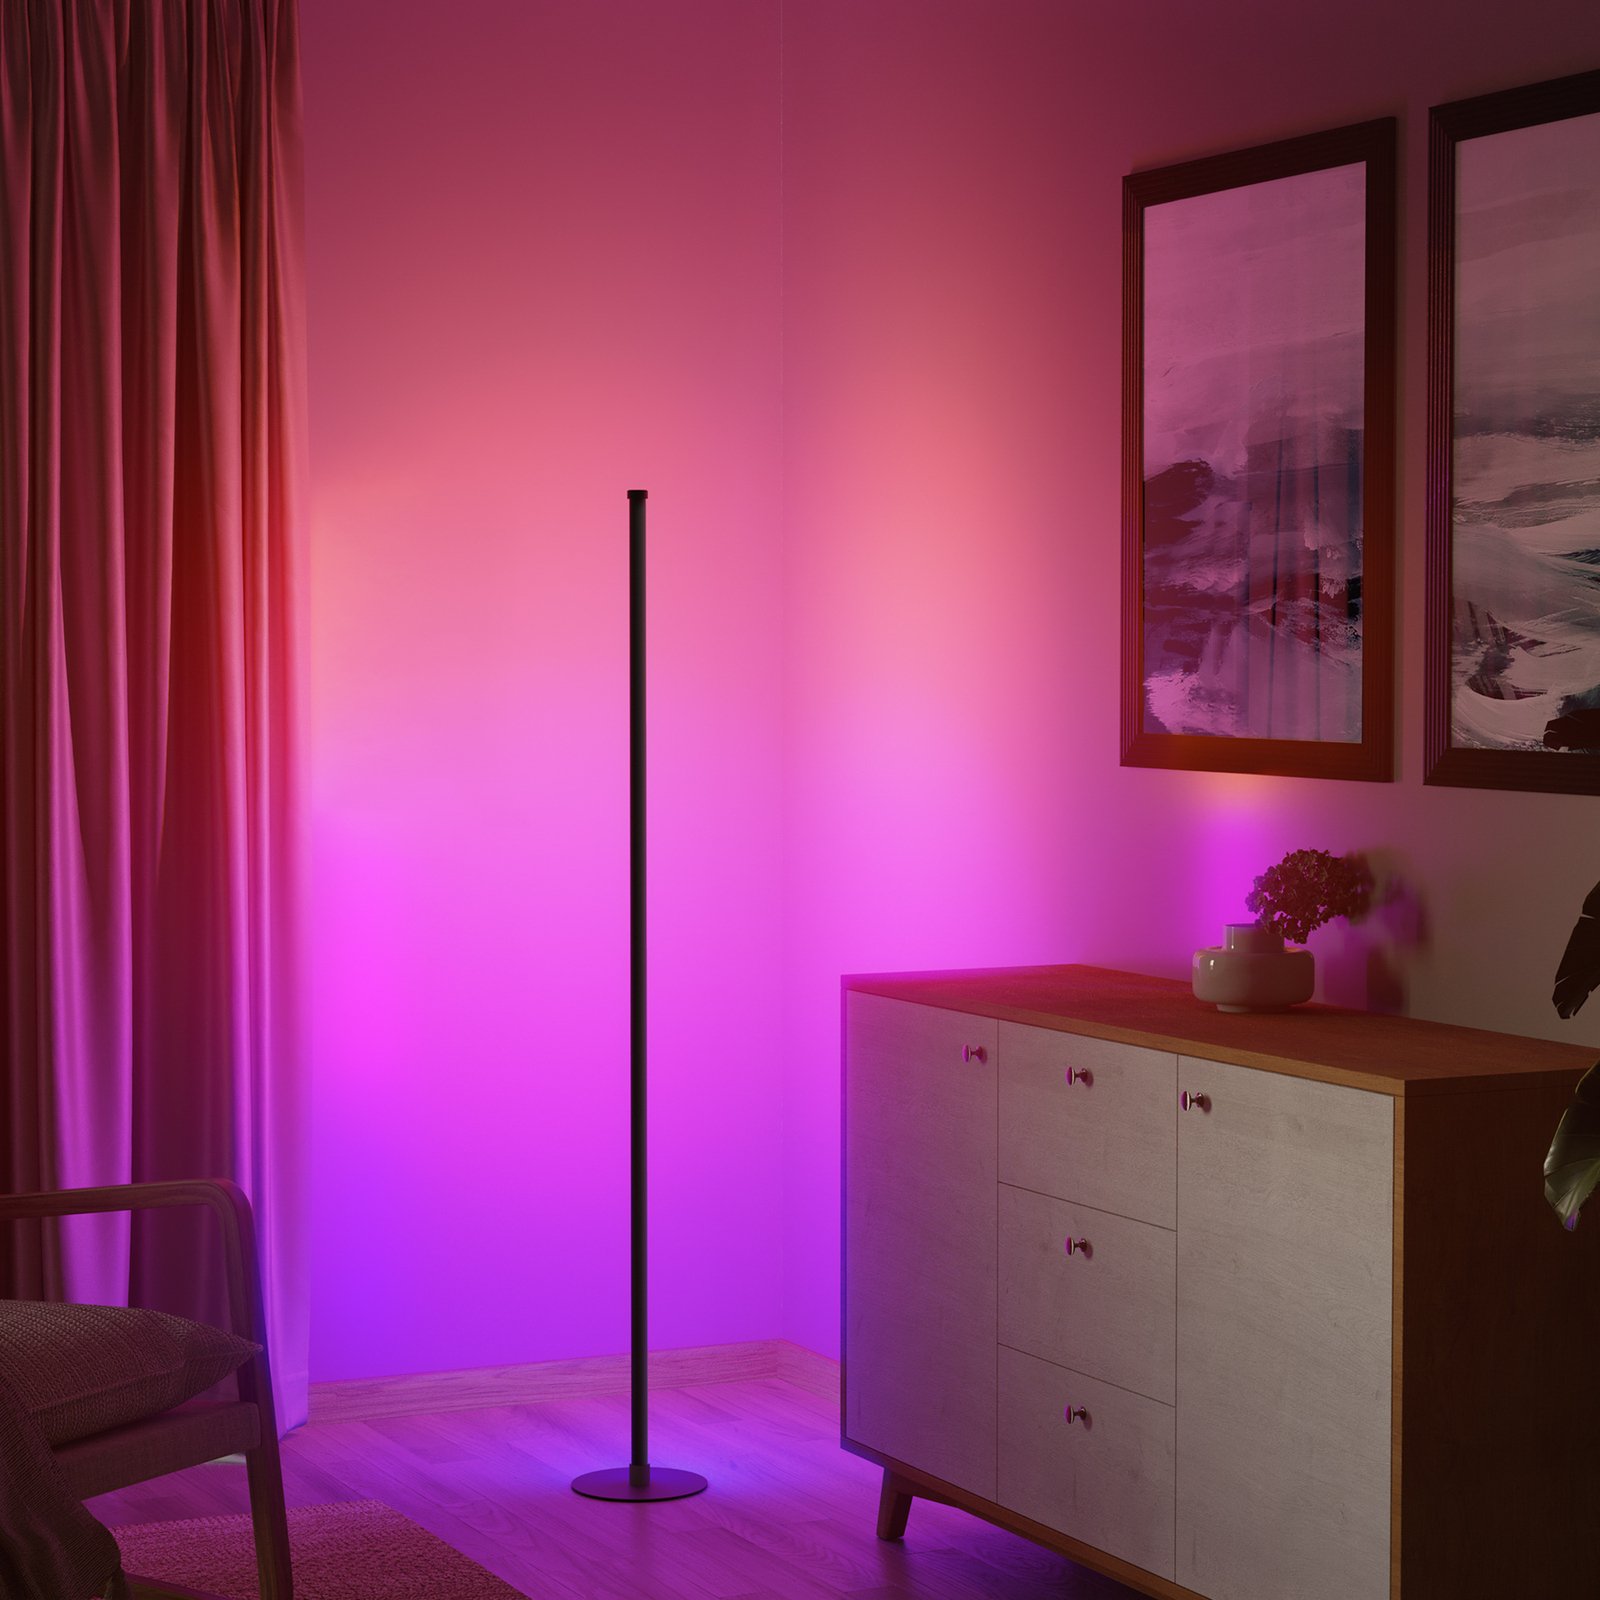 LED állólámpa zeneérzékelővel, intelligens RGB dimmelhető